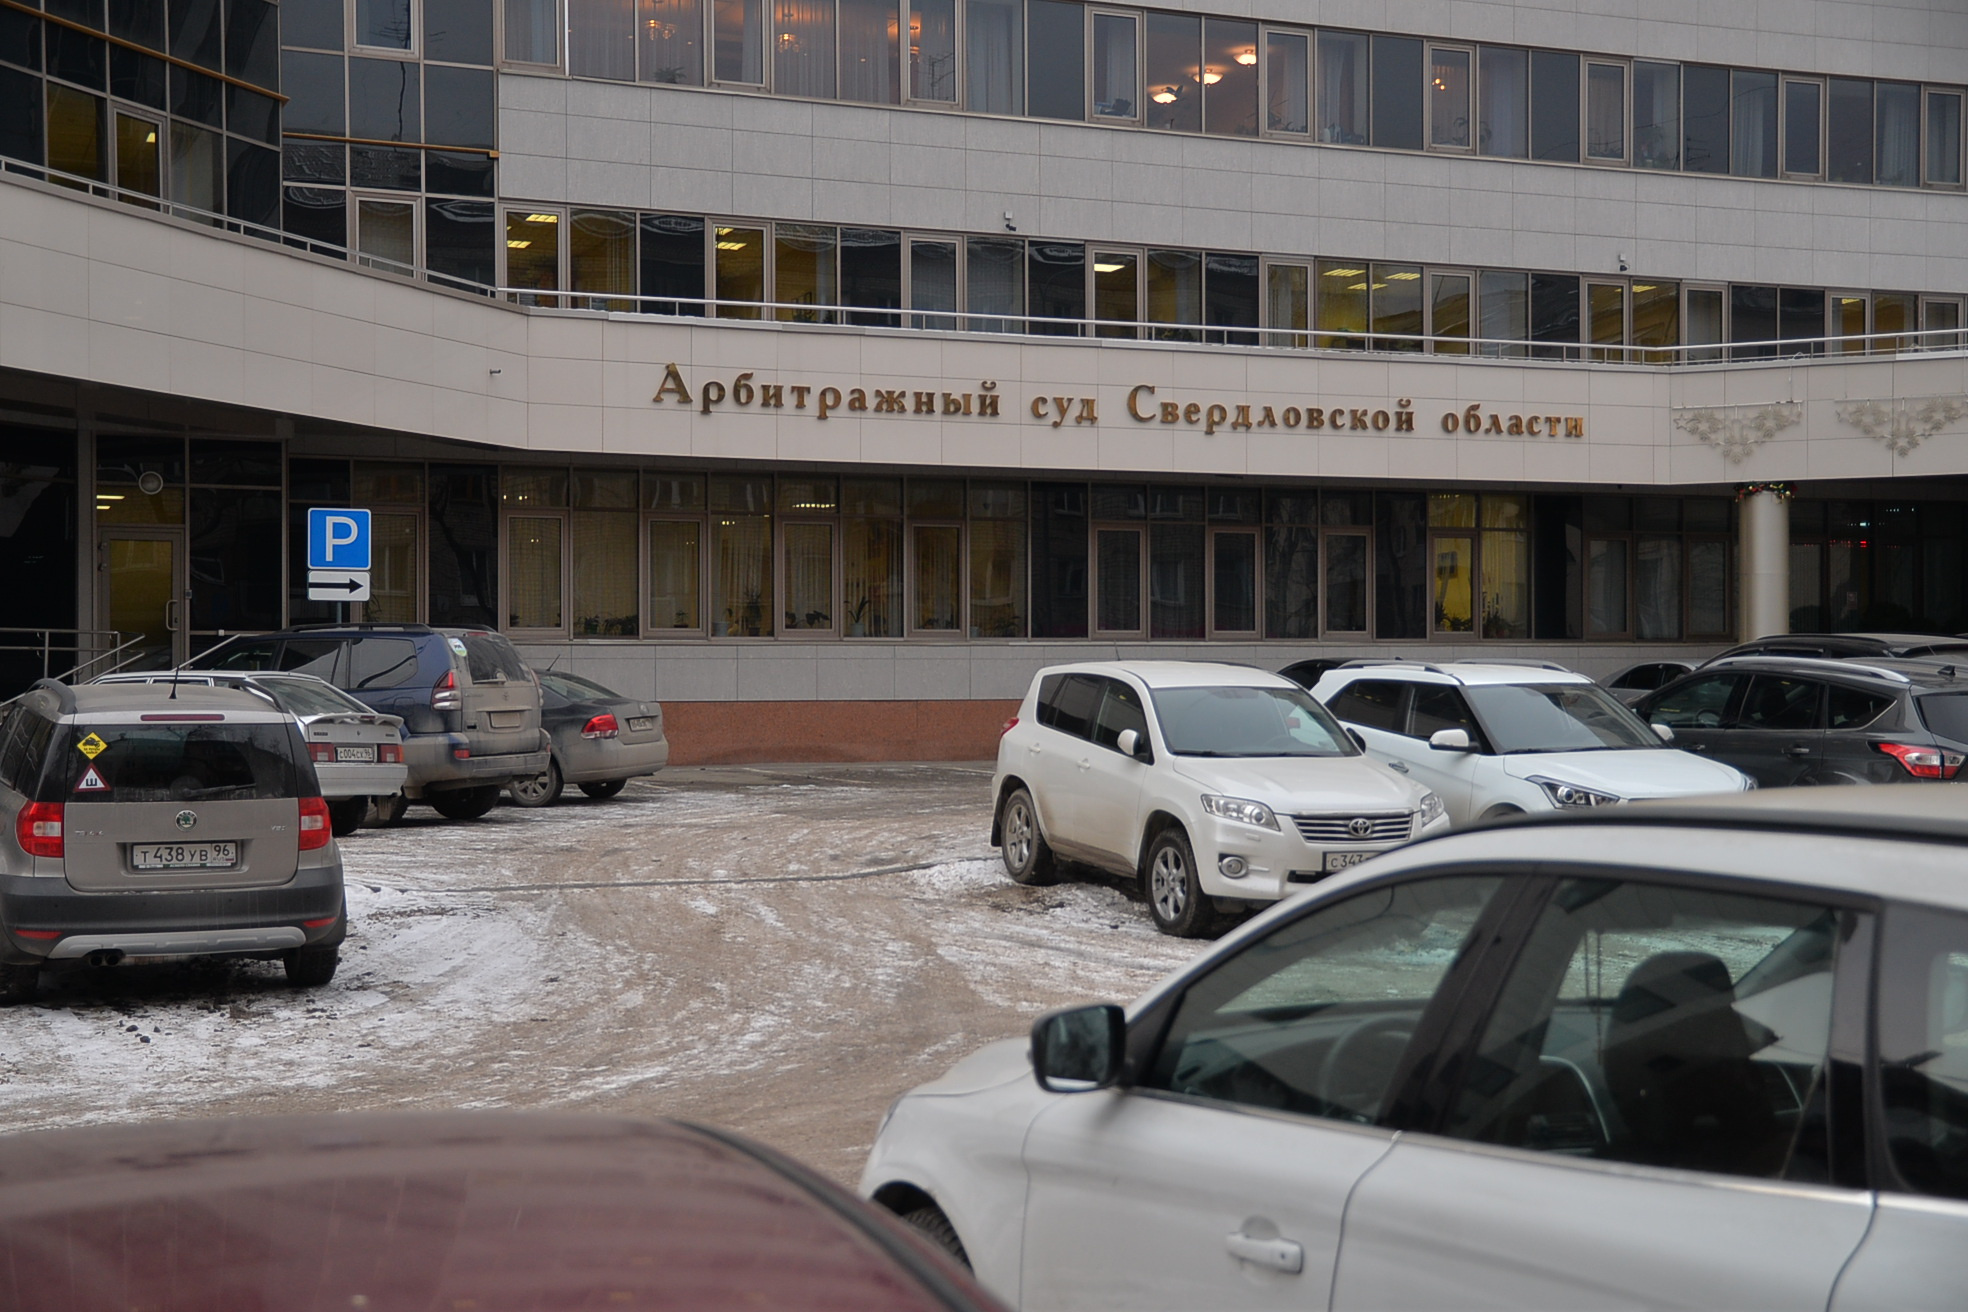 В центре Екатеринбурга укоротят улицу ради памяти важного чиновника. Его именем назовут новый переулок